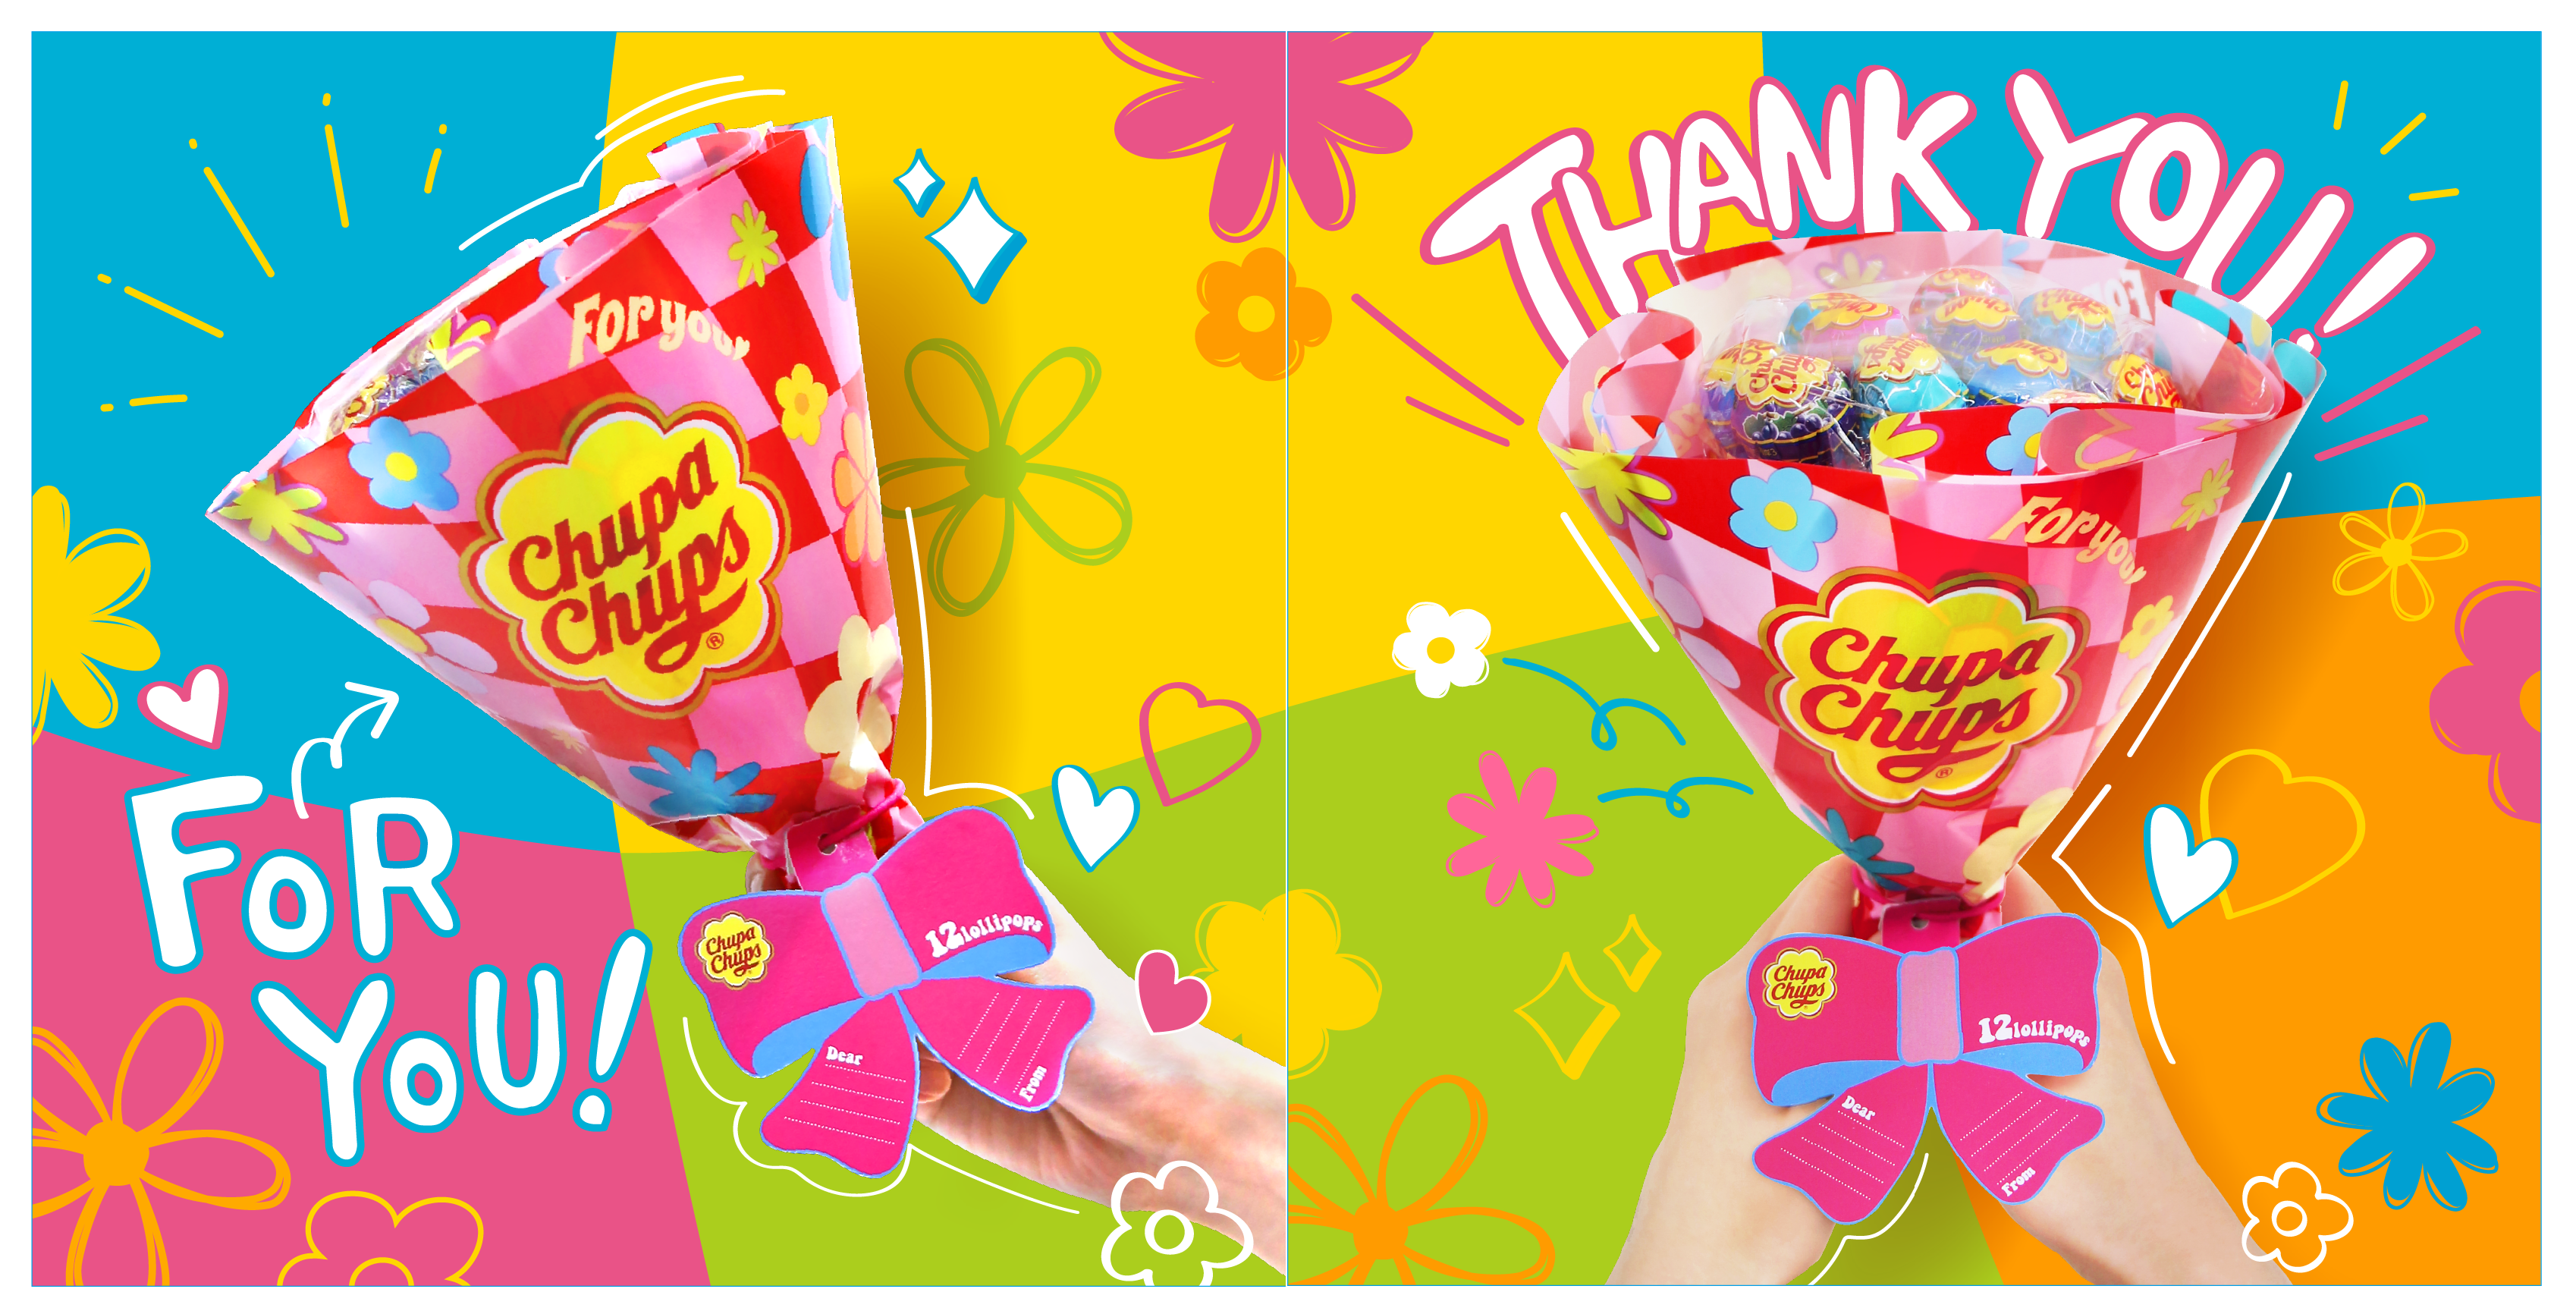 Chupa Chups For You チュッパチャプス フラワーブーケ がデザインリニューアル 手軽に 家族や友達に贈るプレゼントとして最適 飾っても楽しめるカラフルな花束 が1月24日より全国発売 クラシエフーズのプレスリリース